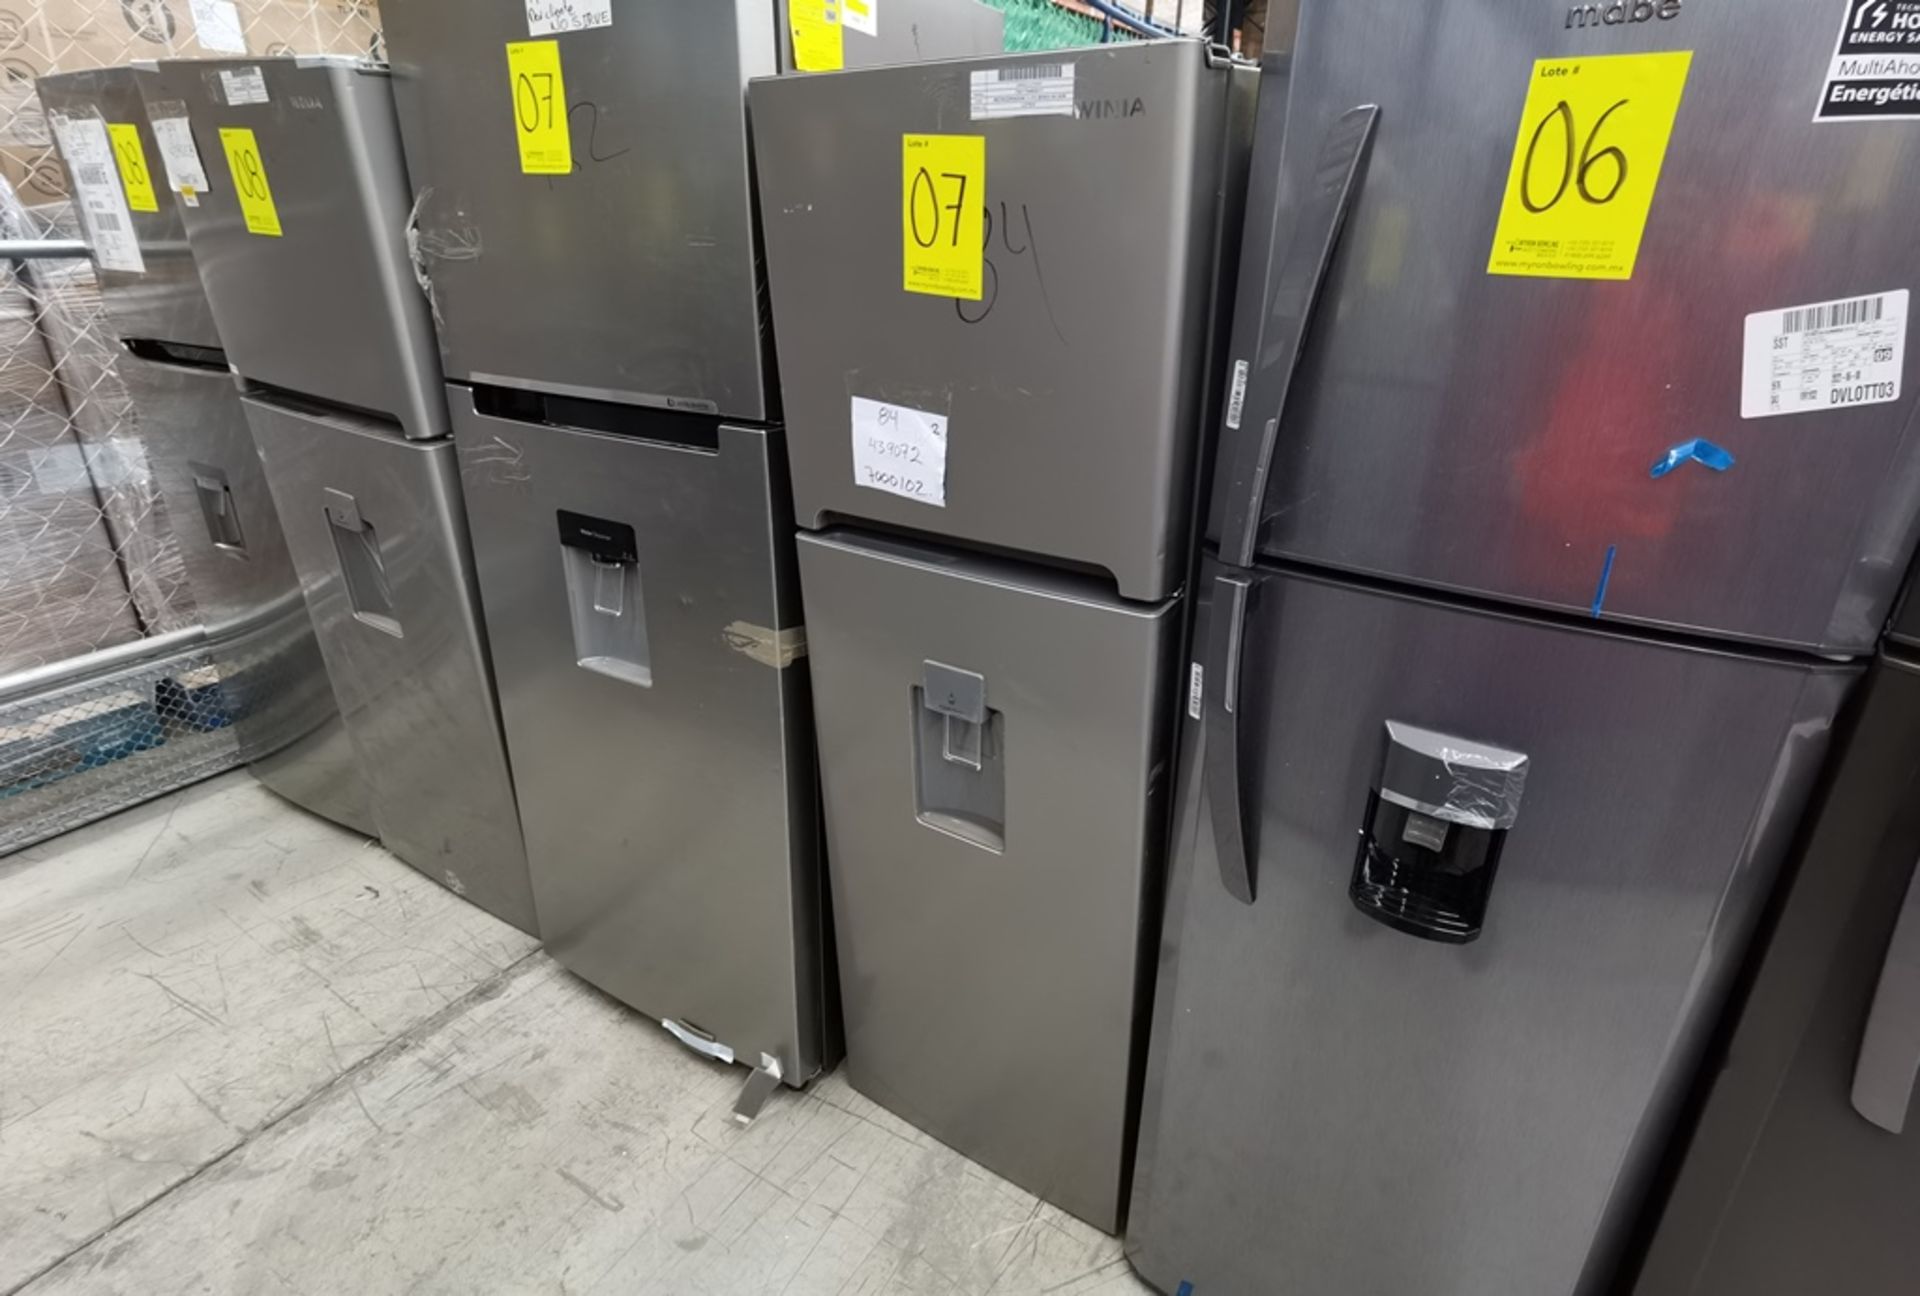 Lote De 2 Refrigeradores Contiene: 1 Refrigerador Marca Winia, Modelo DFR25210GMDX, Serie MR21yN118 - Image 5 of 19